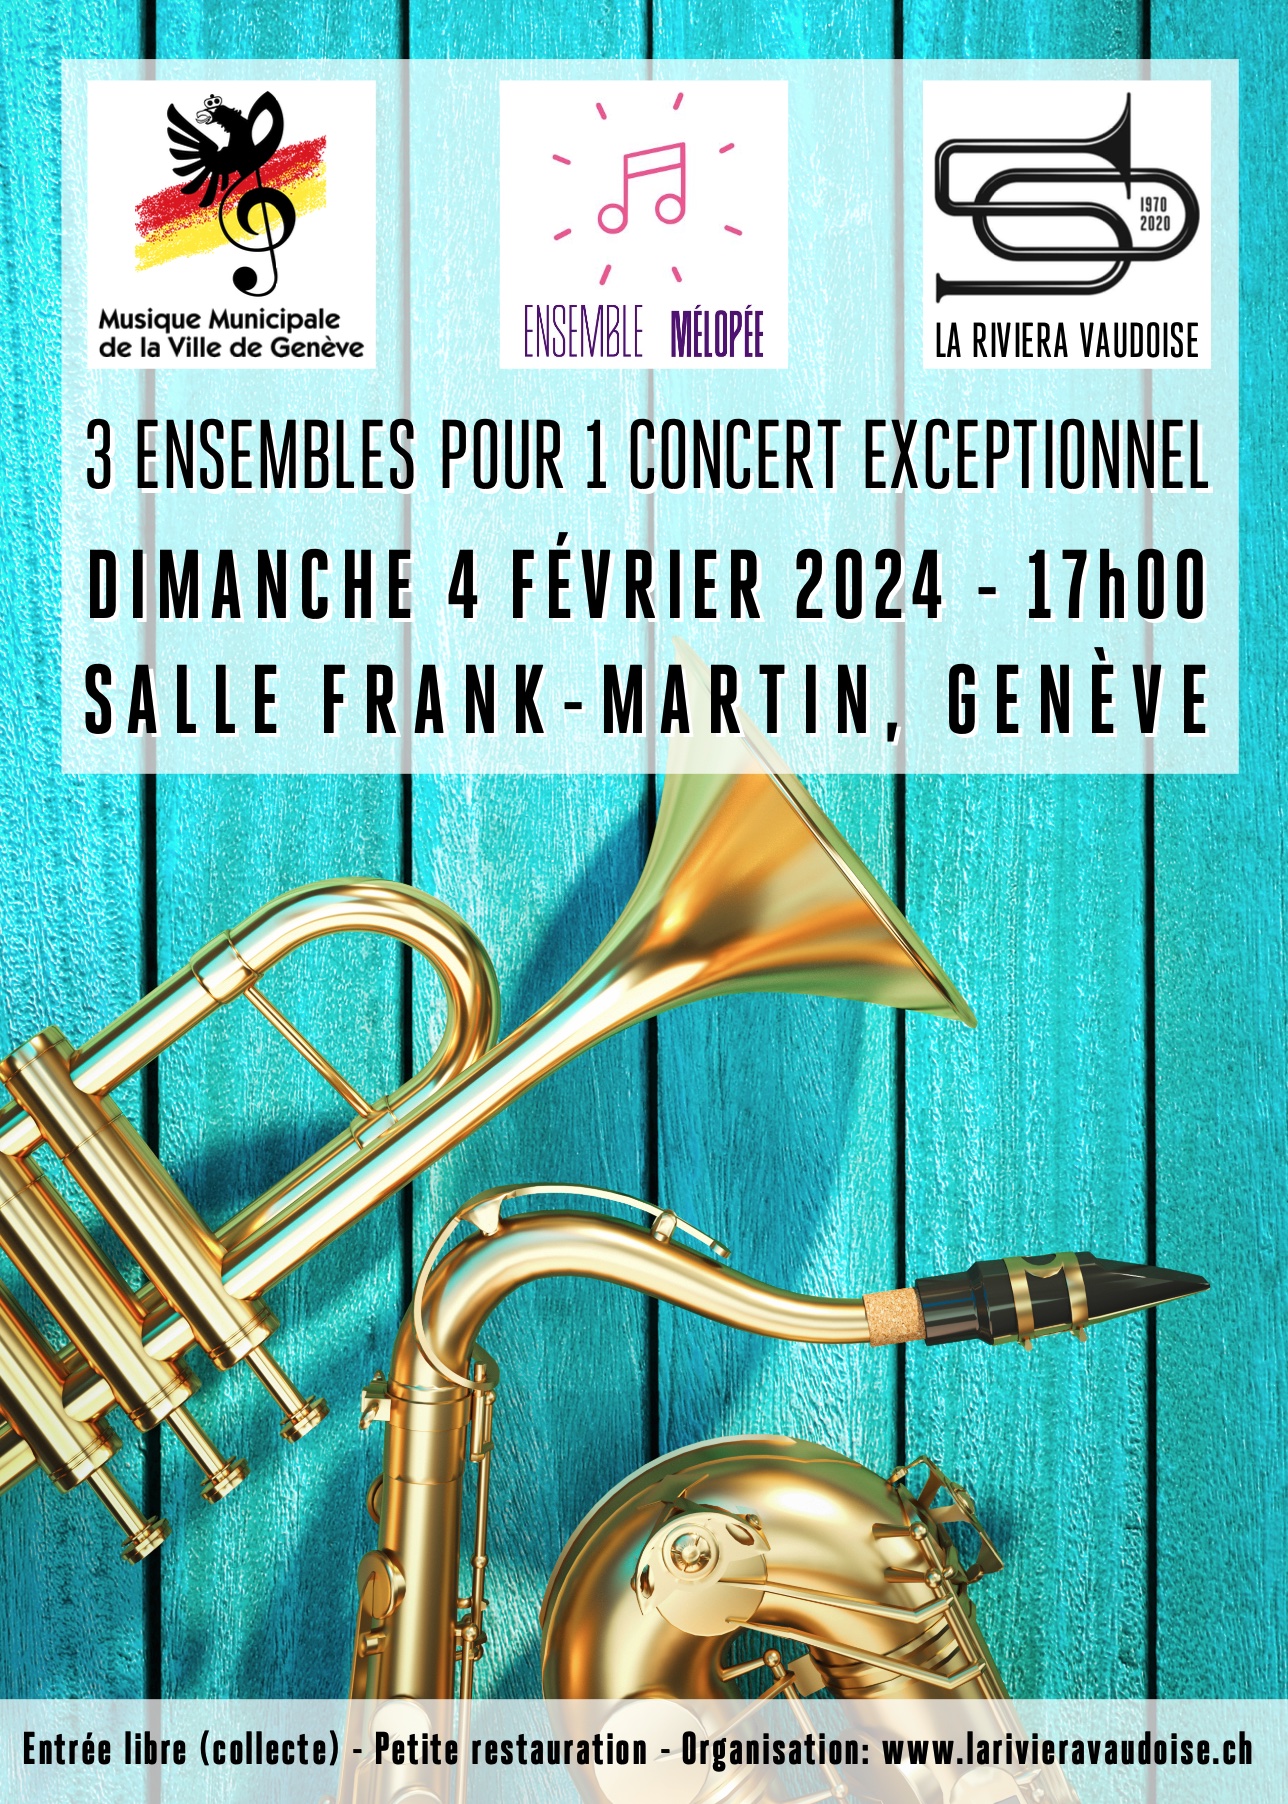 Musique Municipale de Genève, Ensemble Mélopée, La Riviera Vaudoise